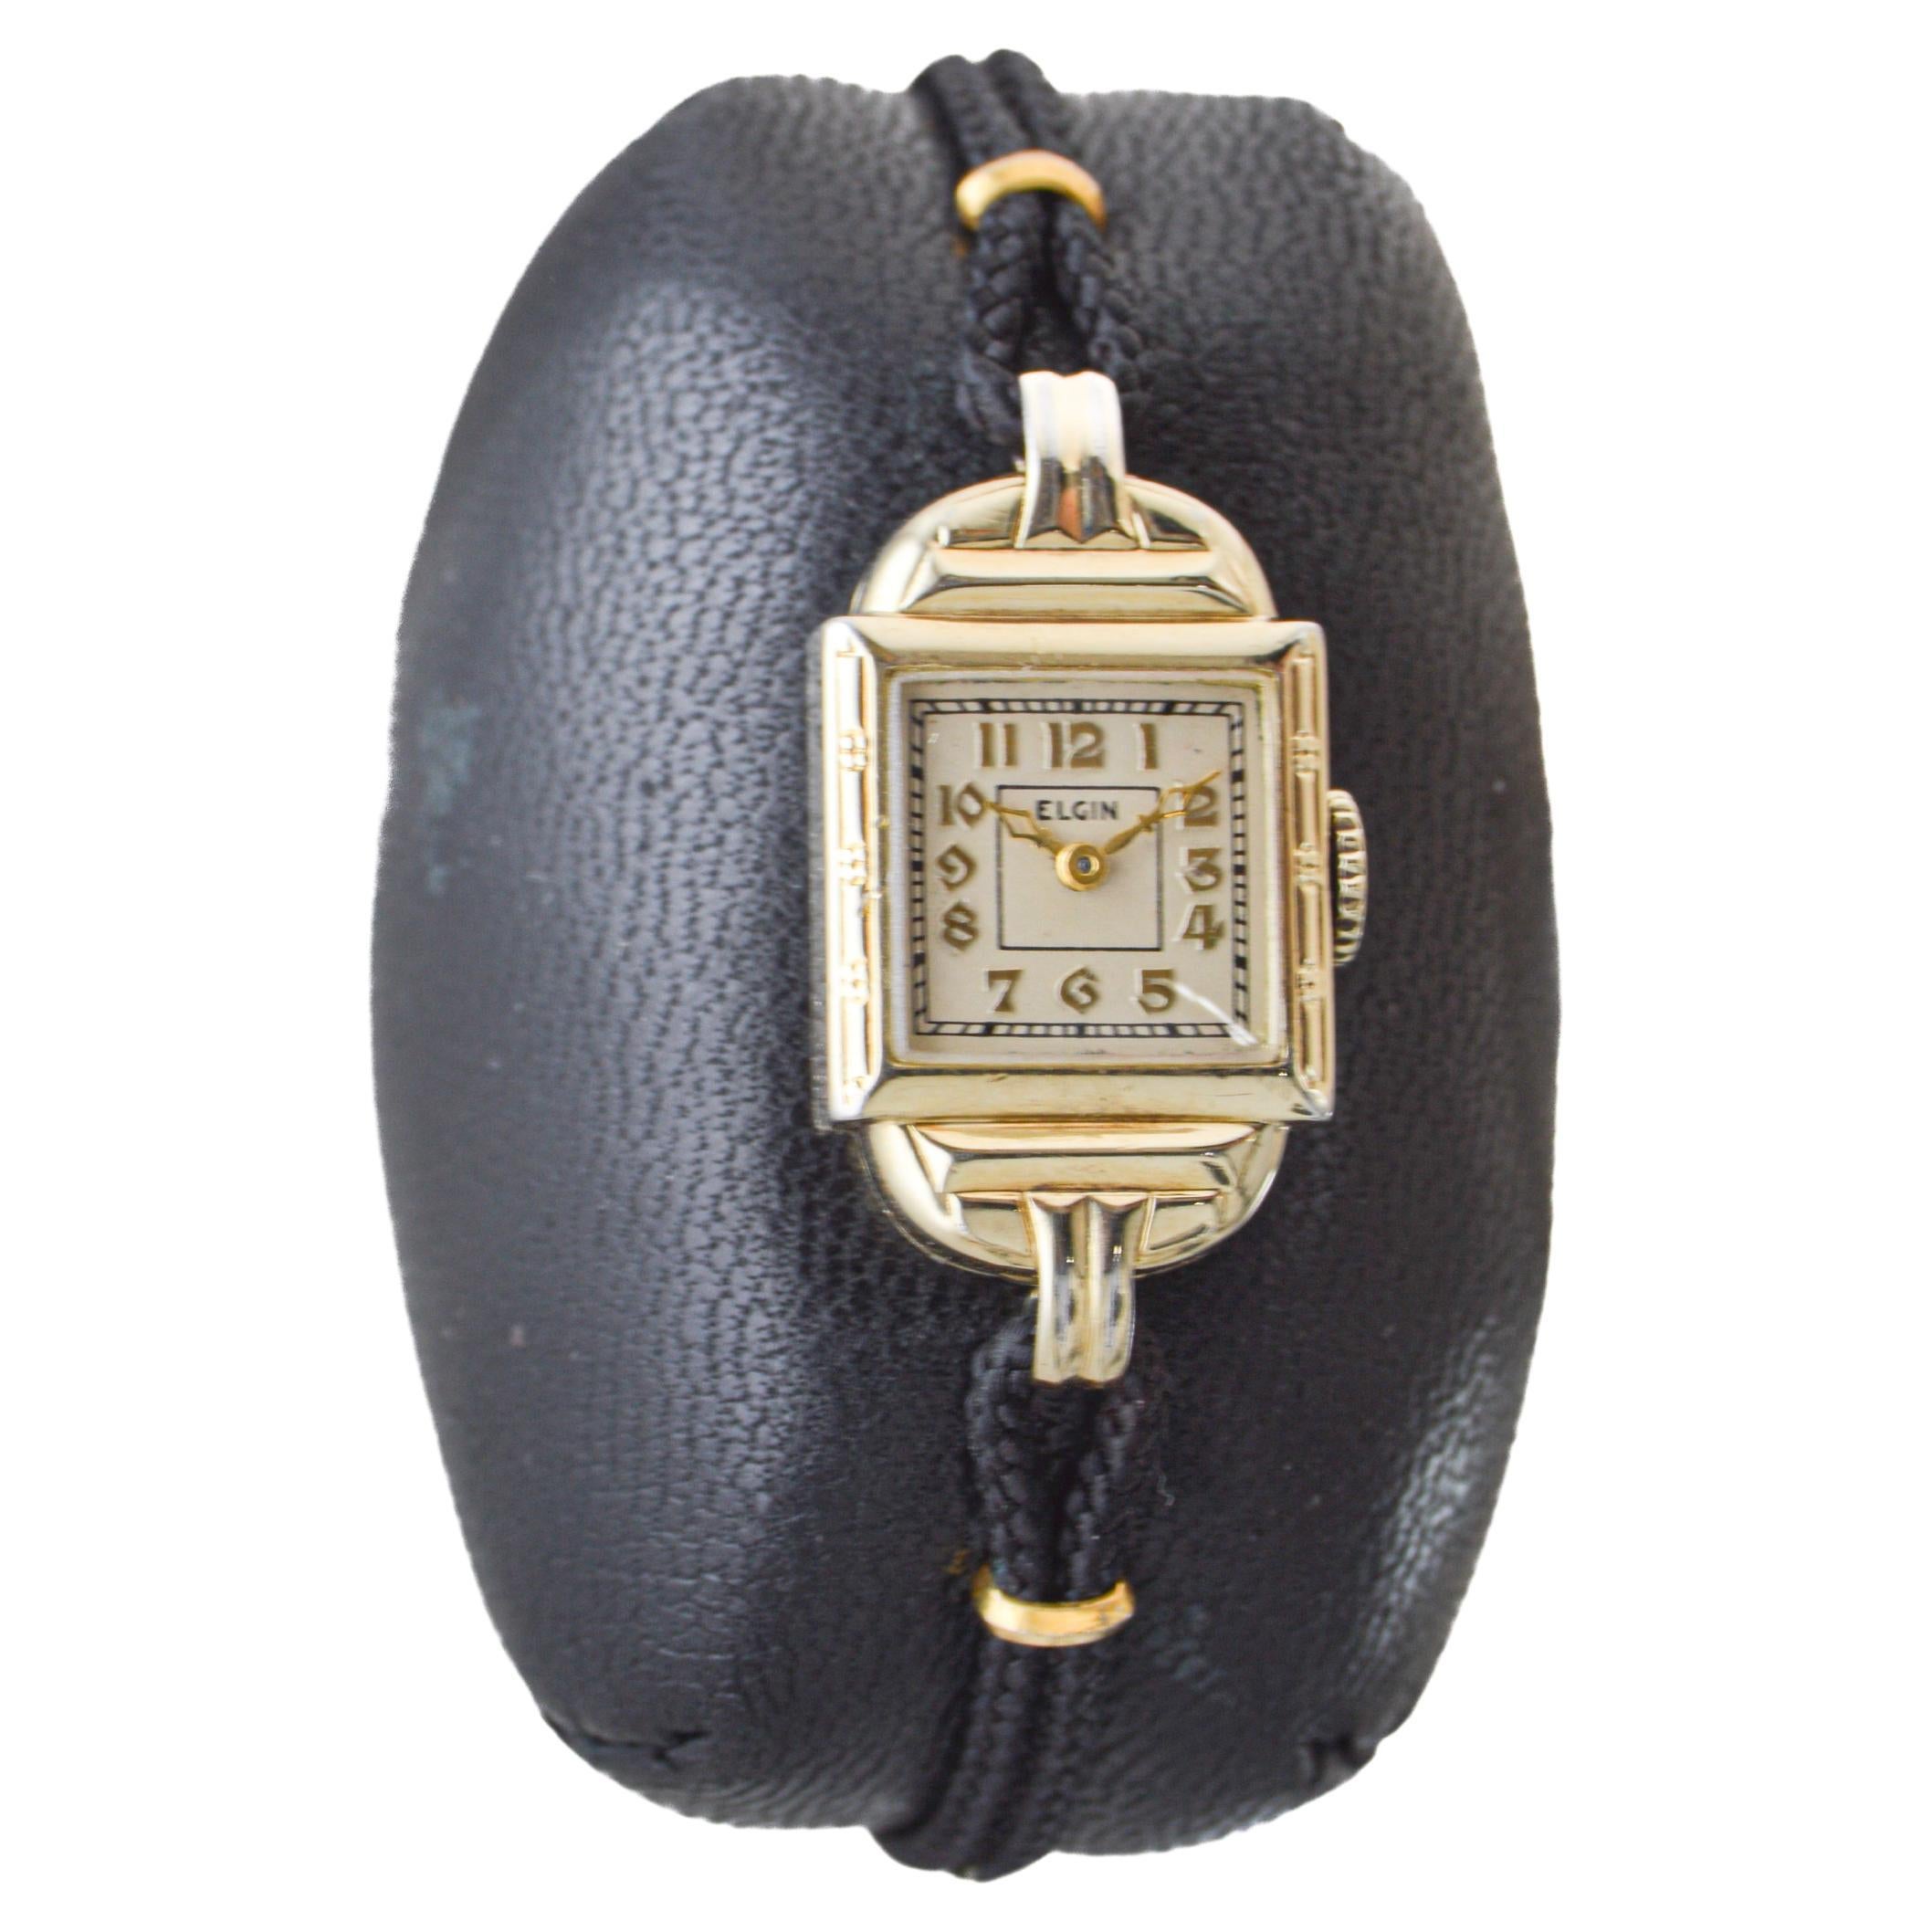 FABRIK / HAUS: Elgin Watch Company
STIL / REFERENZ: Art Deco
METALL / MATERIAL: Gelbgold gefüllt
CIRCA / JAHR: 1930er Jahre
ABMESSUNGEN / GRÖSSE: Länge 30mm X Breite 15mm
UHRWERK / KALIBER: Handaufzug / 7 Jewels 
ZIFFERN / ZEIGER: Original